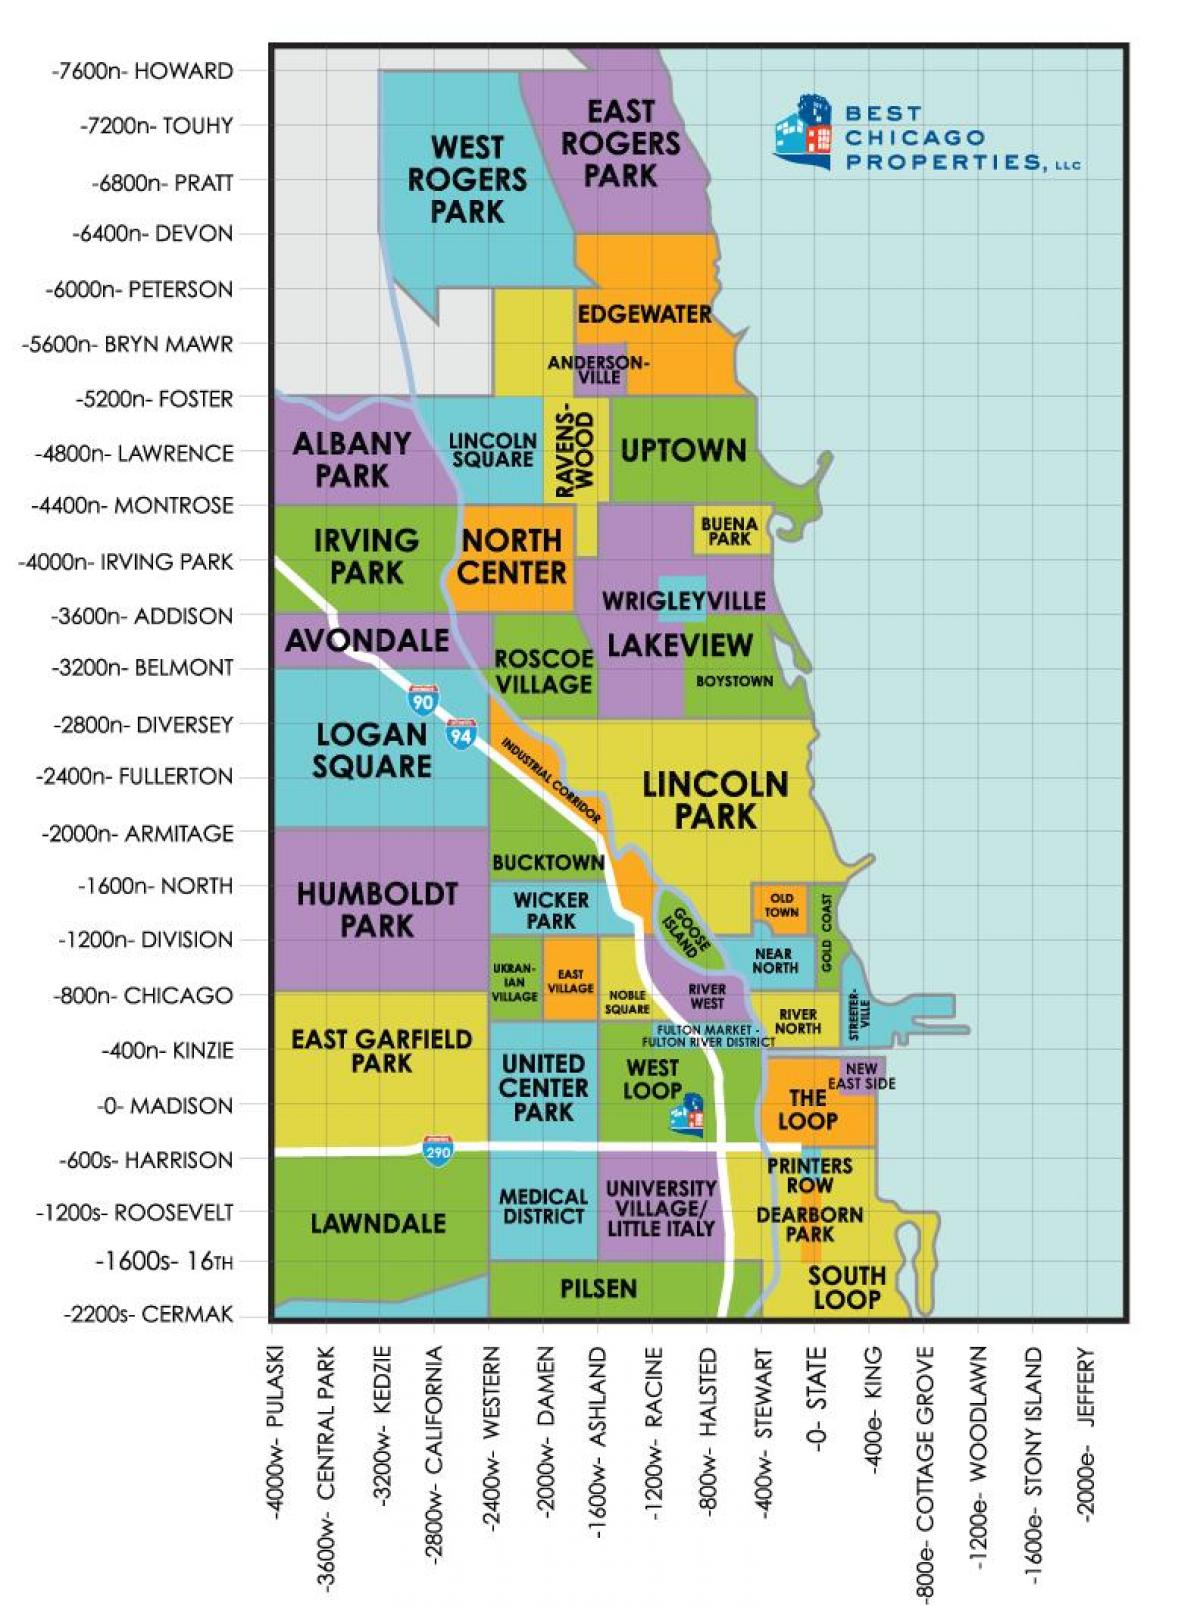 soseskah v Chicagu zemljevid